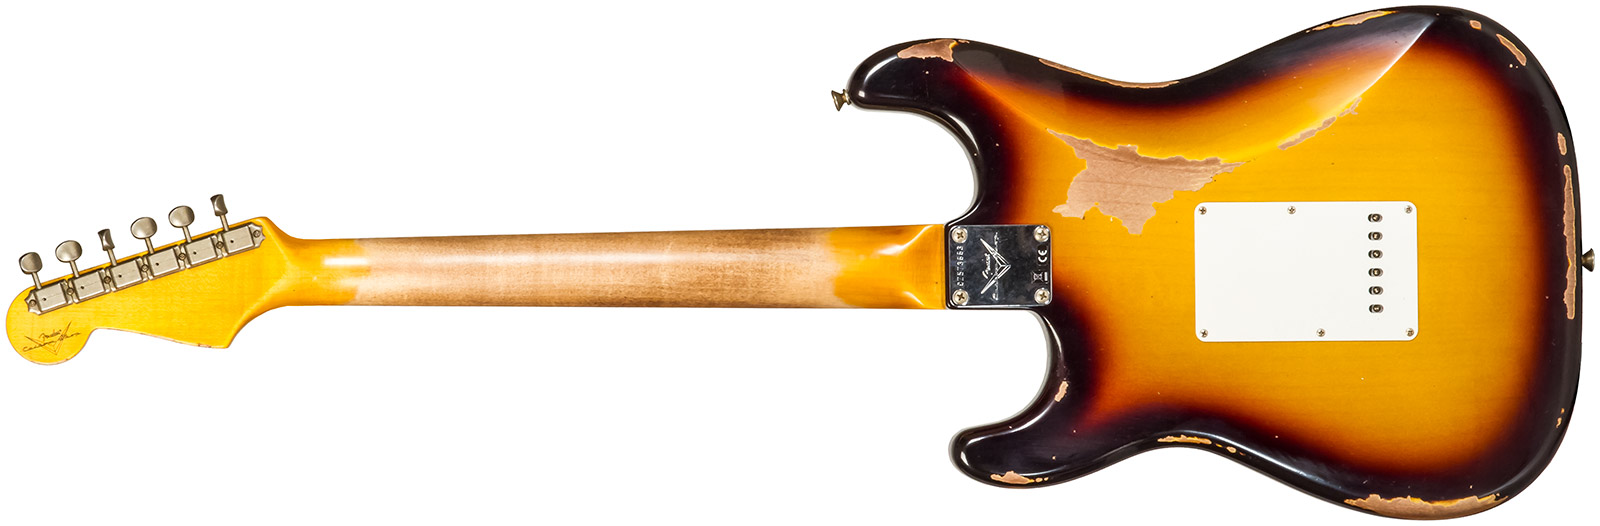 Fender Custom Shop Strat 1961 3s Trem Rw #cz573663 - Heavy Relic Aged 3-color Sunburst - Guitare Électrique Forme Str - Variation 1